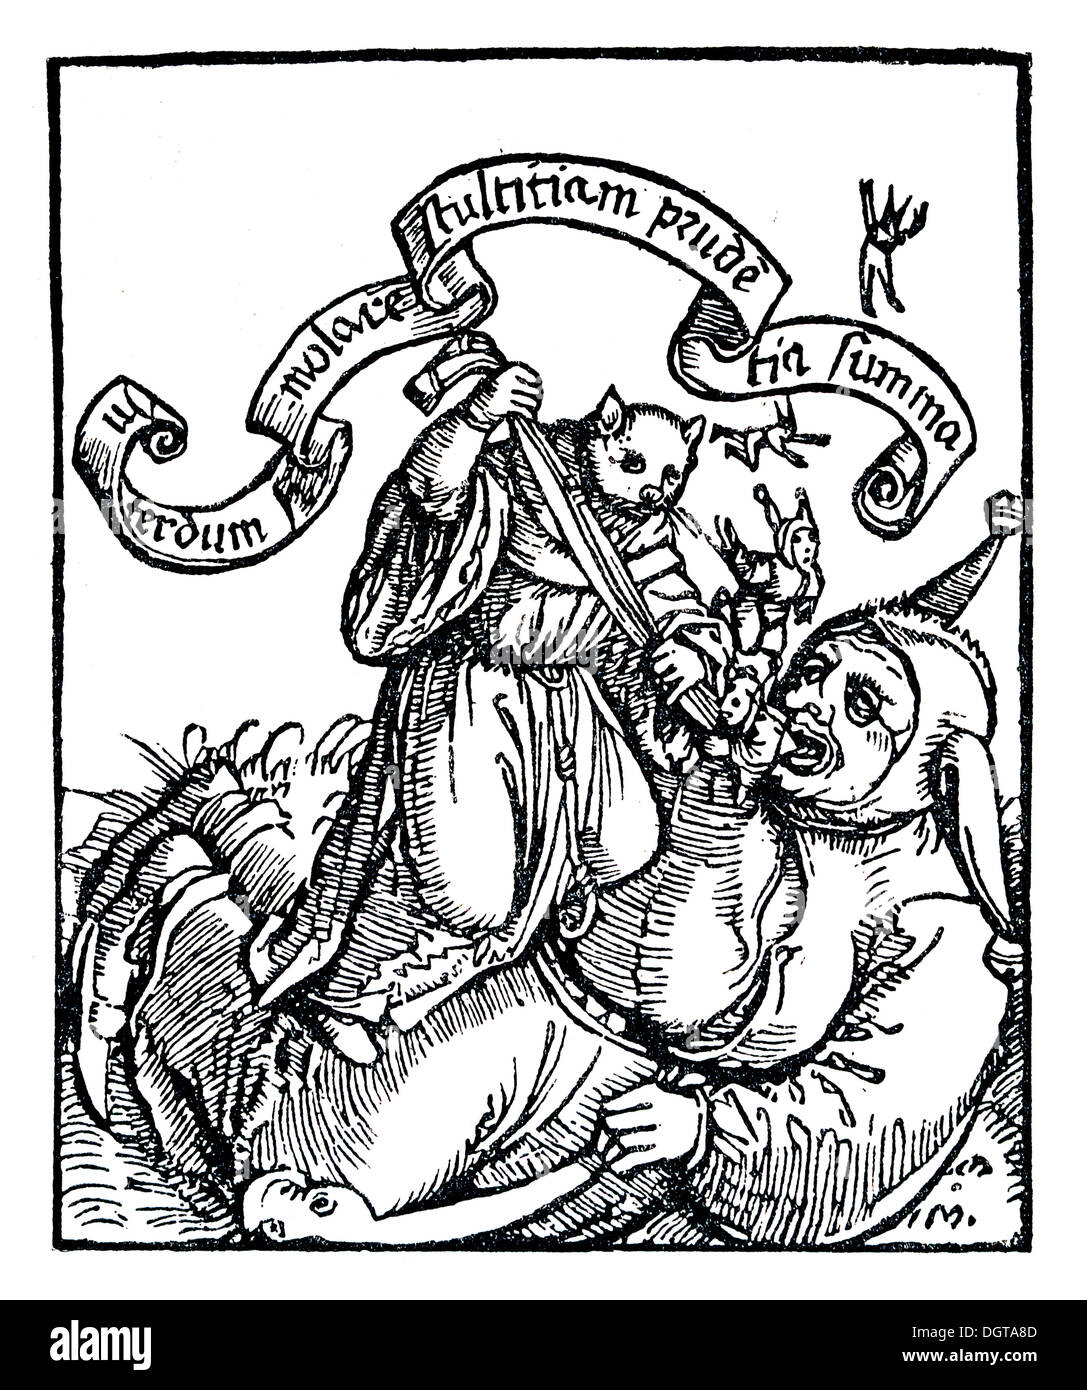 The cover of Murner's 'Grosser lultherischer Narren' or 'Great Lutheran Fool', historic depiction in Deutsche Stock Photo